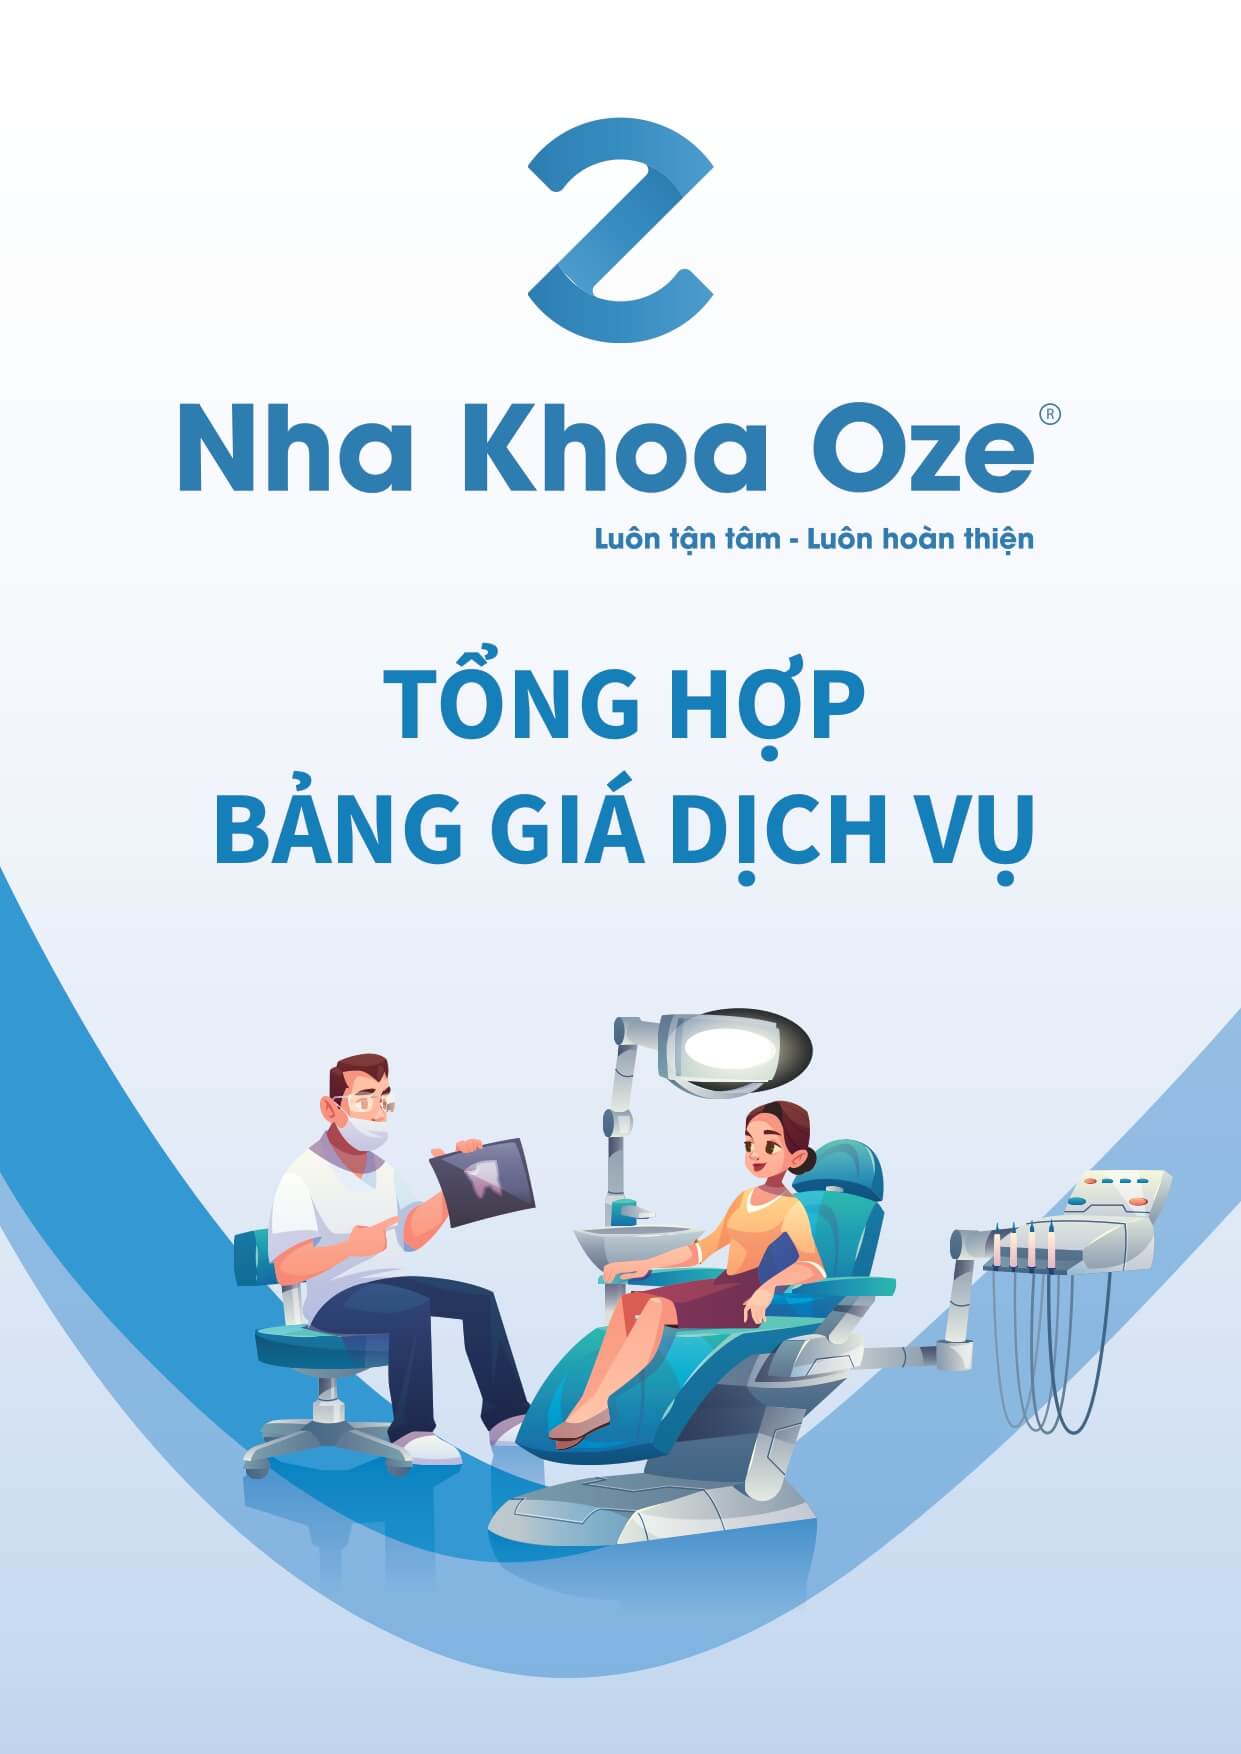 bảng giá dịch vụ nha khoa oze